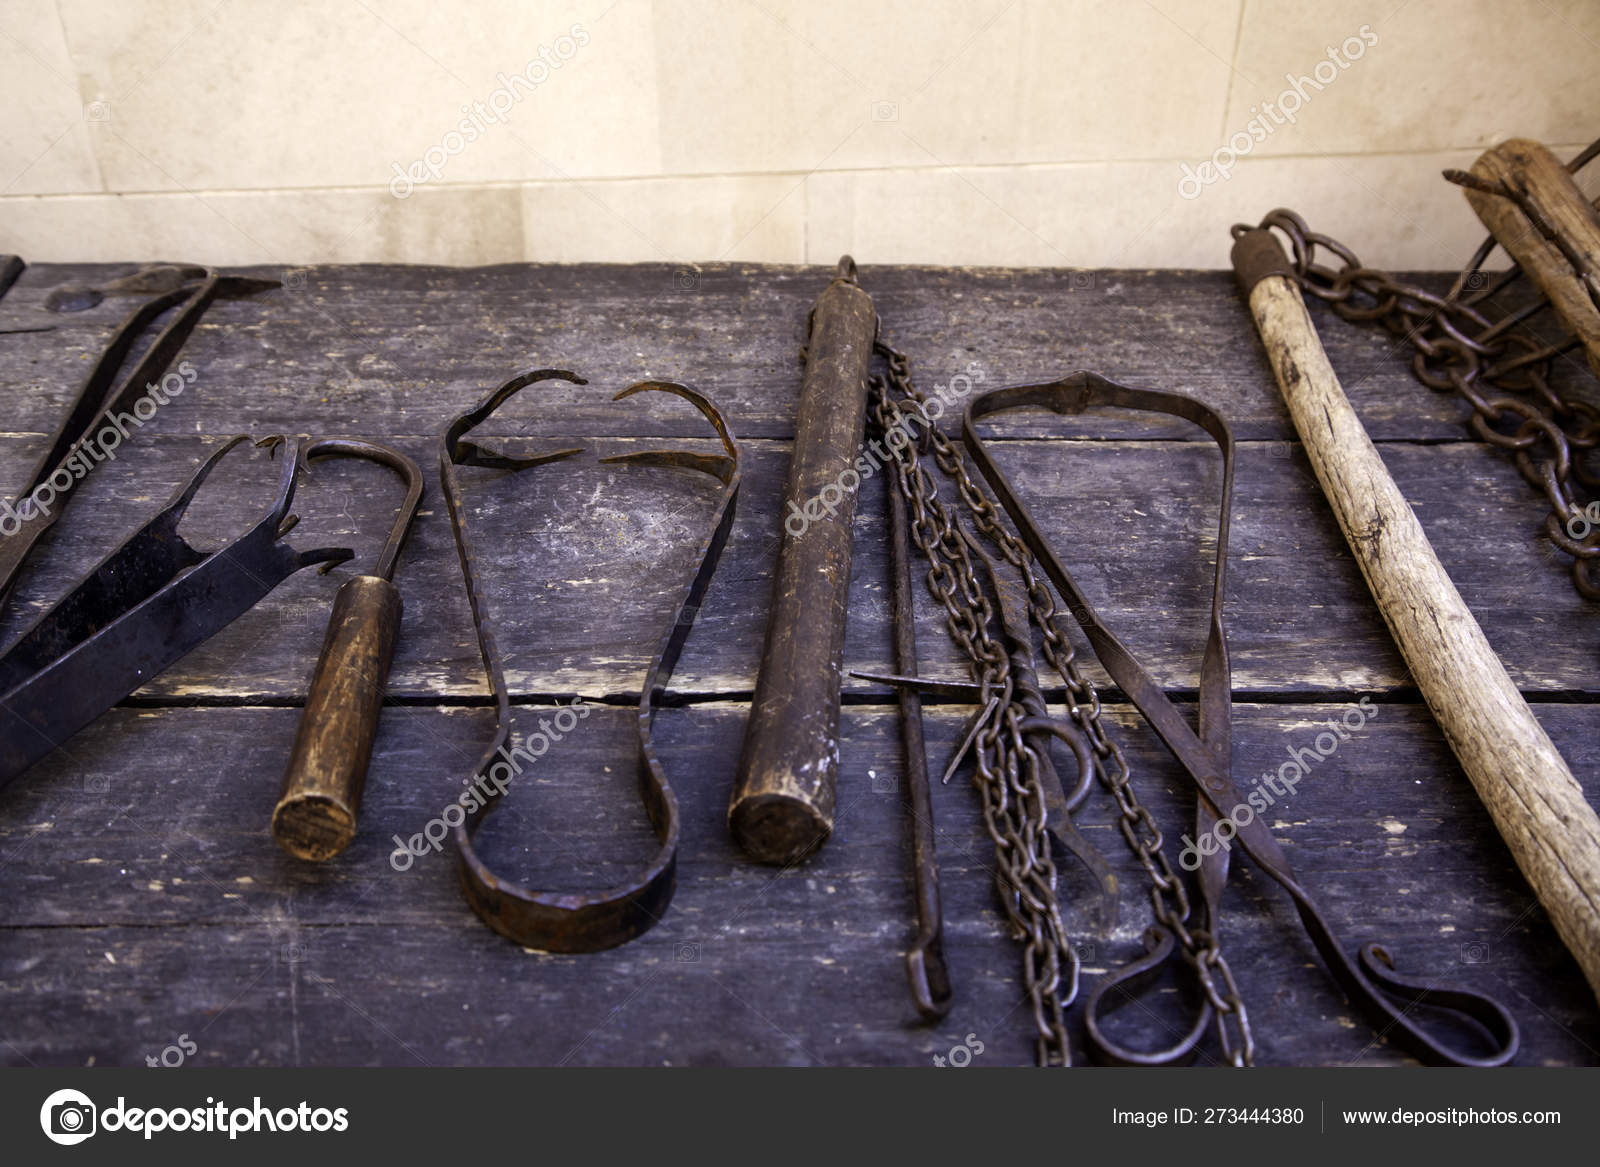 Оружие пыток. Хирургические инструменты для пыток. Средневековые инструменты пыток.